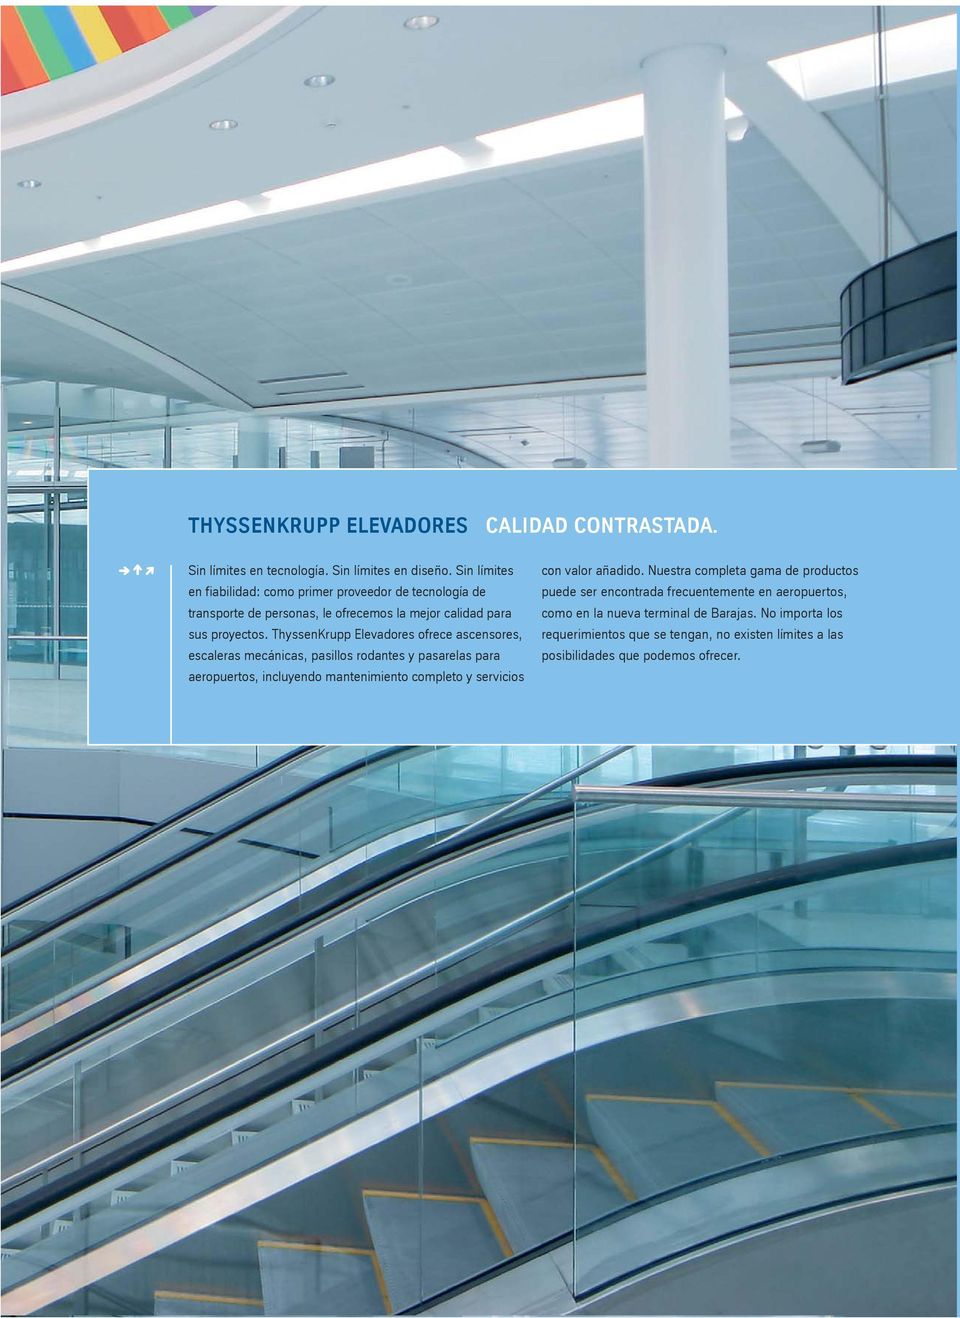 ThyssenKrupp Elevadores ofrece ascensores, escaleras mecánicas, pasillos rodantes y pasarelas para aeropuertos, incluyendo mantenimiento completo y servicios